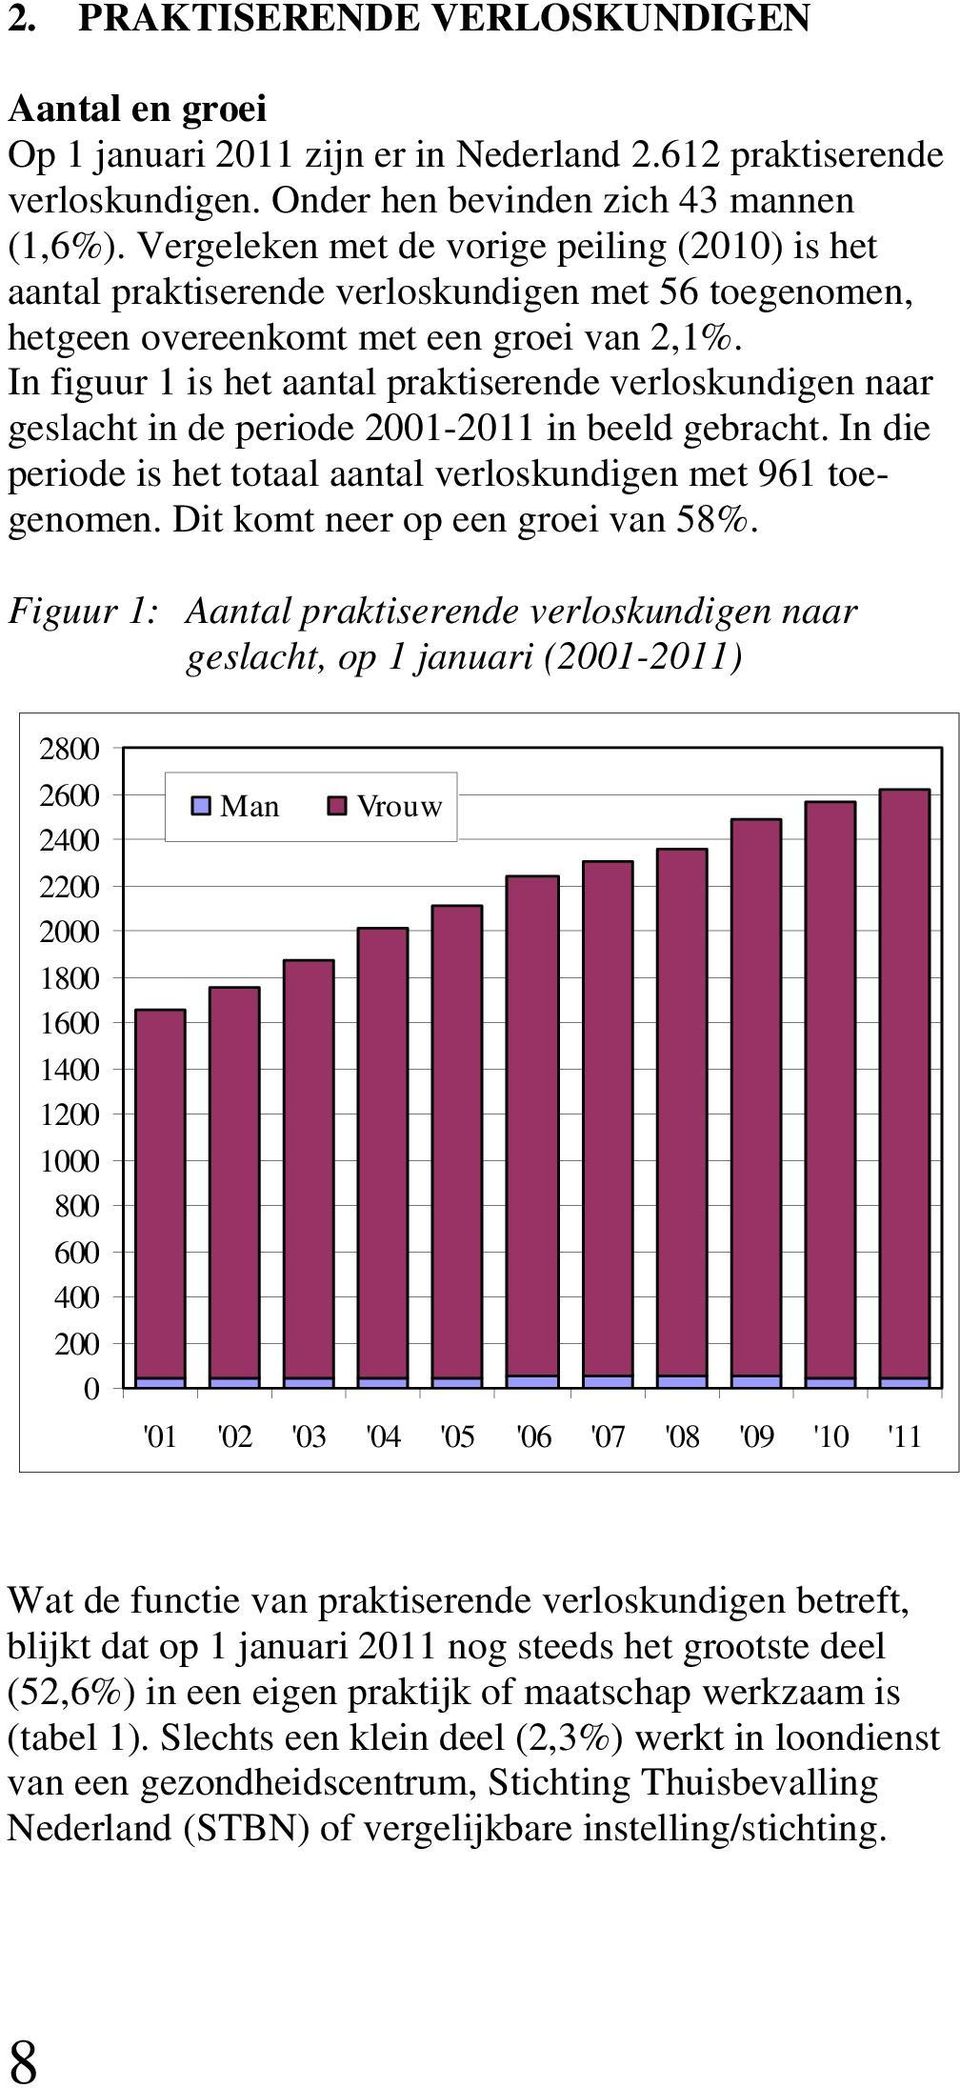 In figuur 1 is het aantal praktiserende verloskundigen naar geslacht in de periode 2001-2011 in beeld gebracht. In die periode is het totaal aantal verloskundigen met 961 toegenomen.